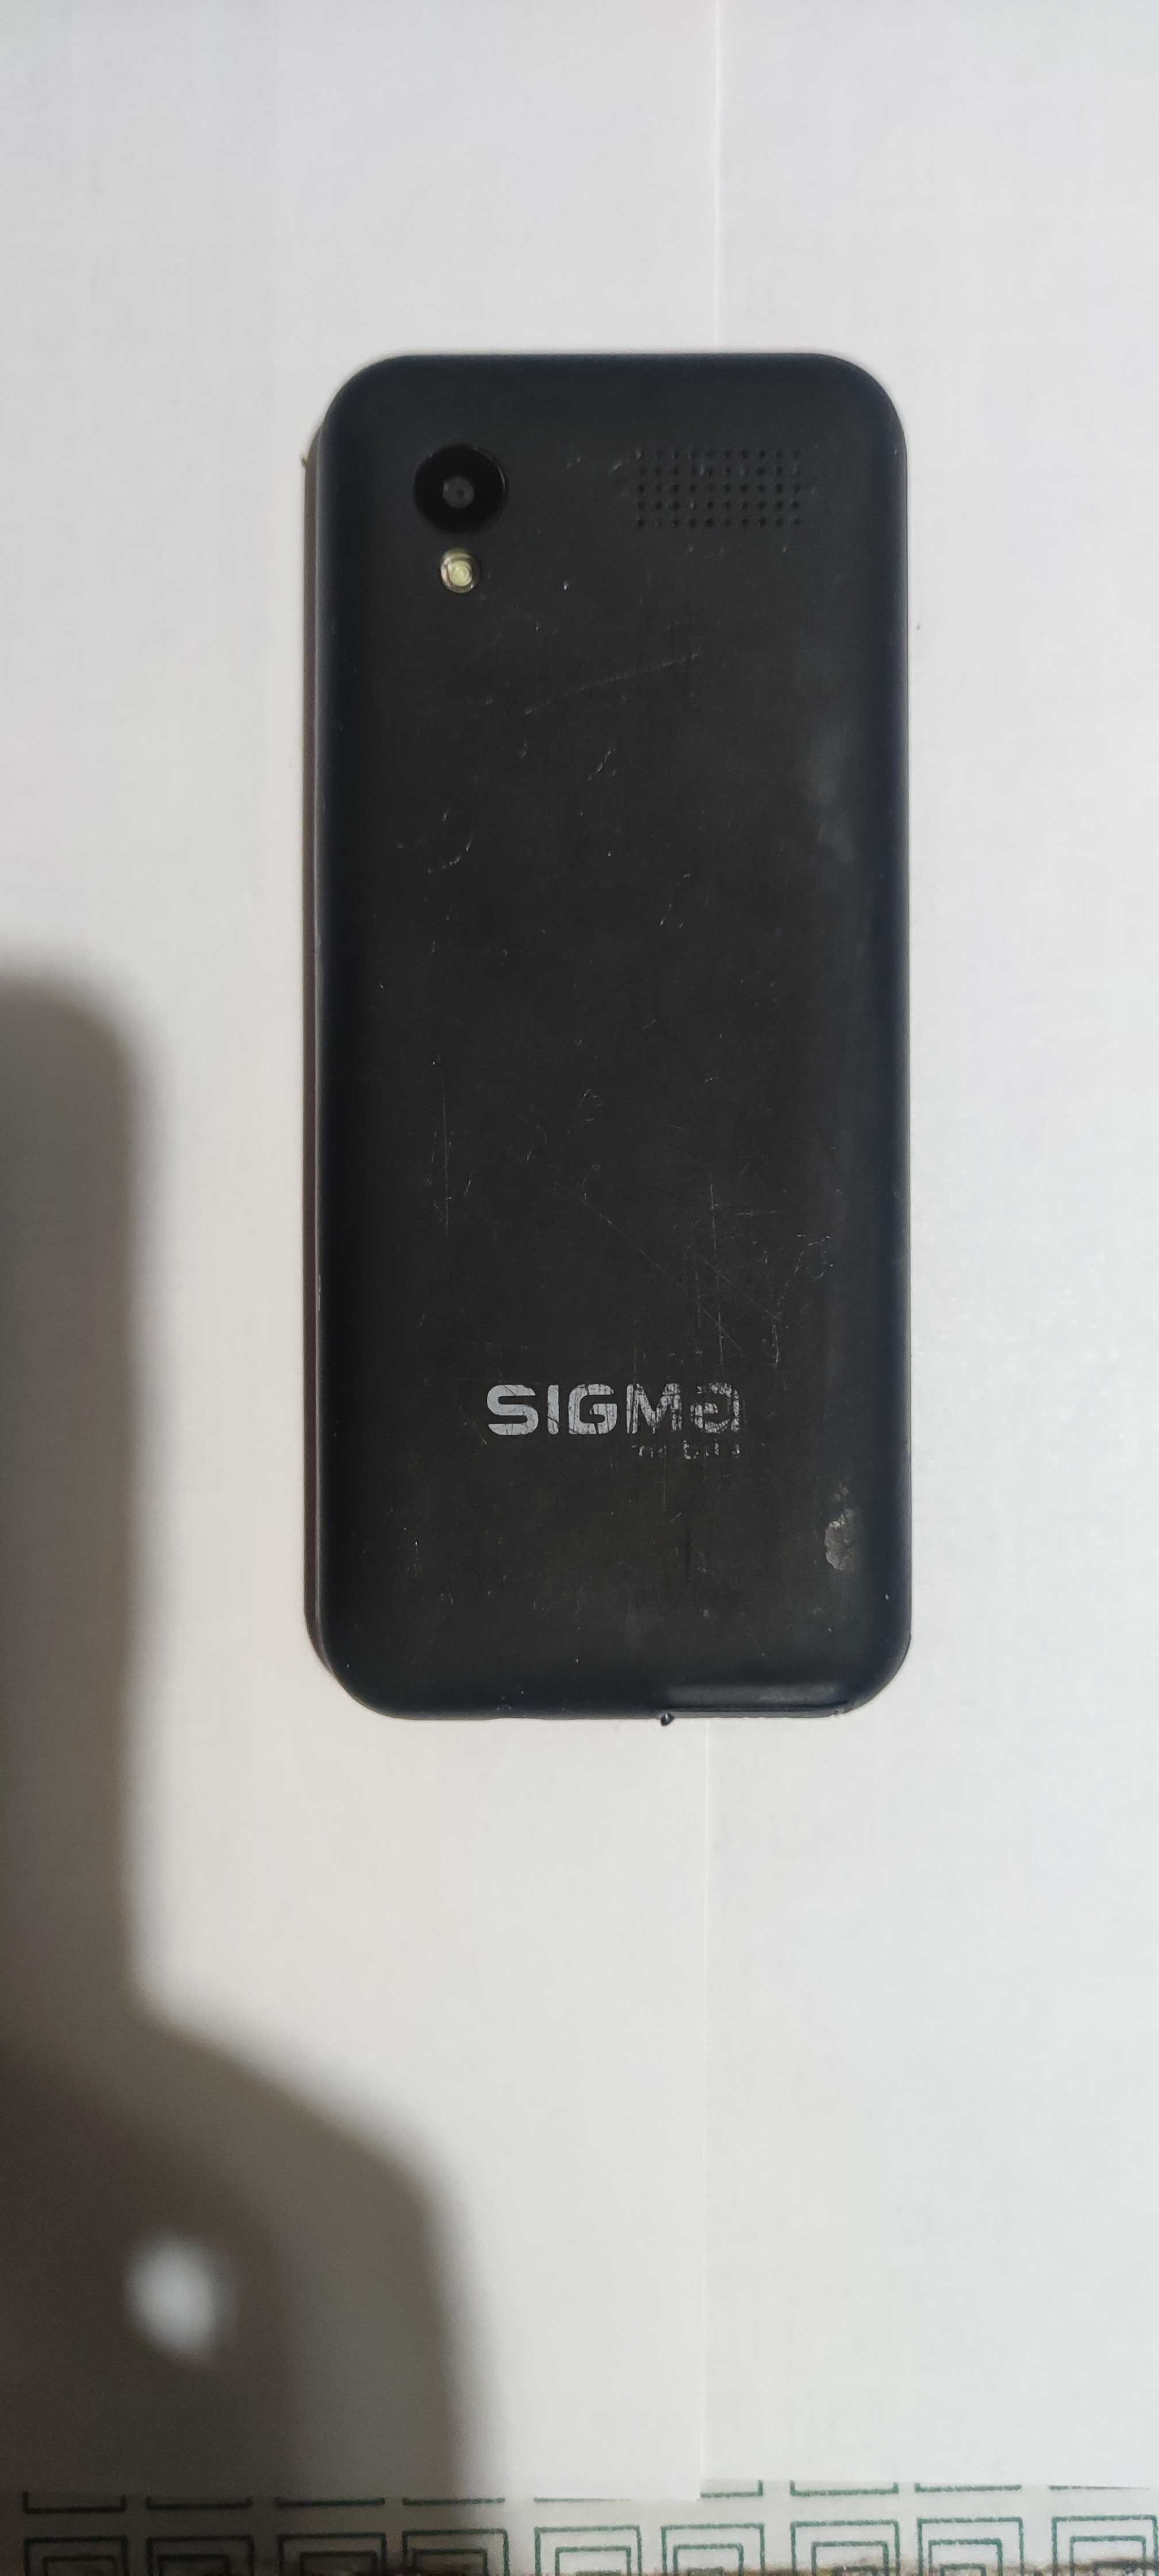 2 телефона Sigma mobile X-style 31 Power Dual